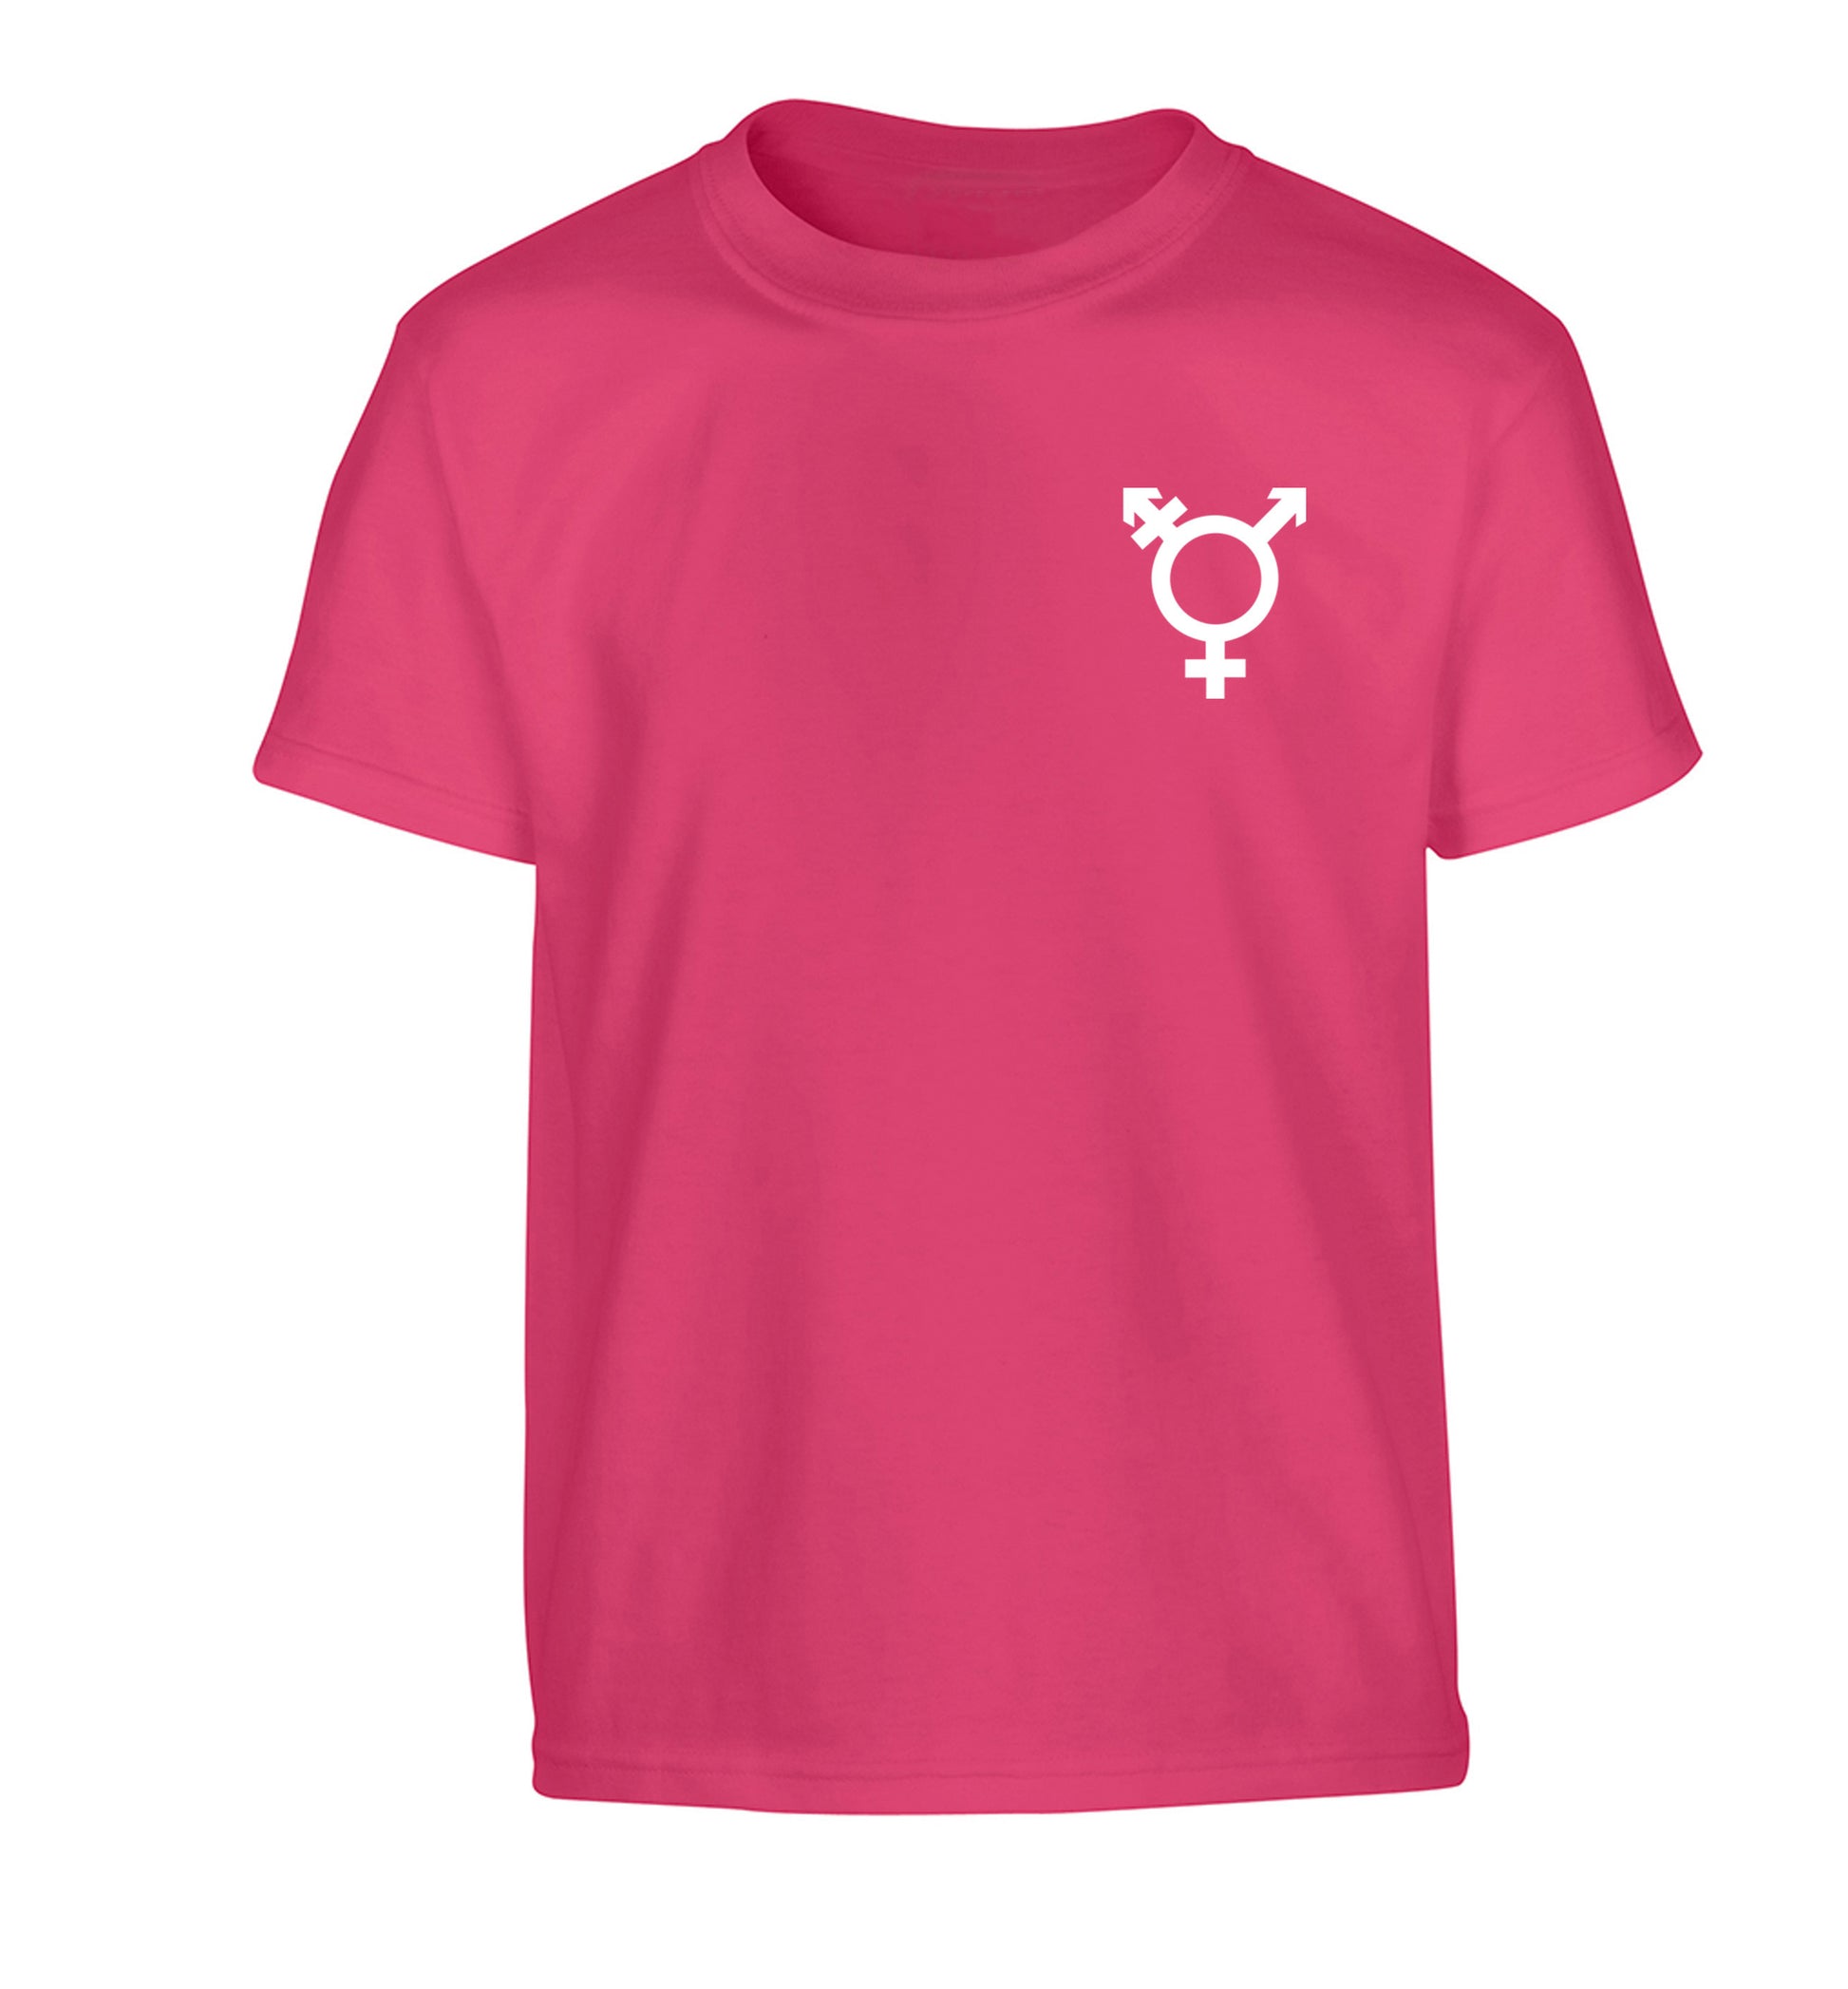 Trans gender symbol pocket Children's pink Tshirt 12-14 Years